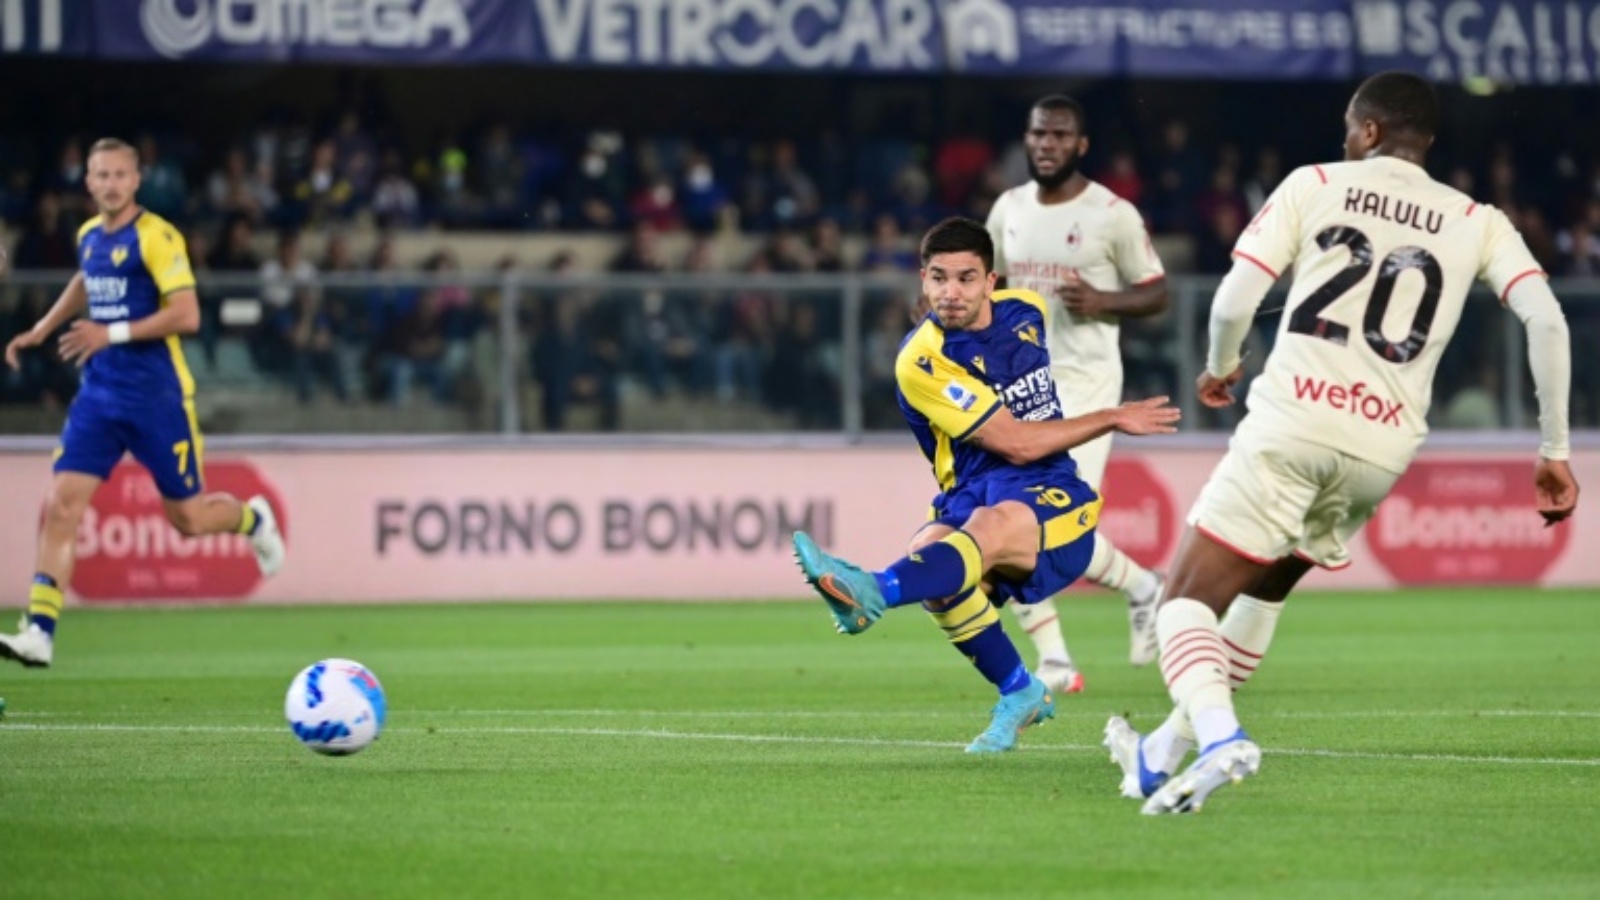 الأرجنتيني جيوفاني سيميوني الوافد الجديد إلى نابولي سجل 17 هدفاً لصالح فريق فيرونا في الدوري الإيطالي الموسم الماضي